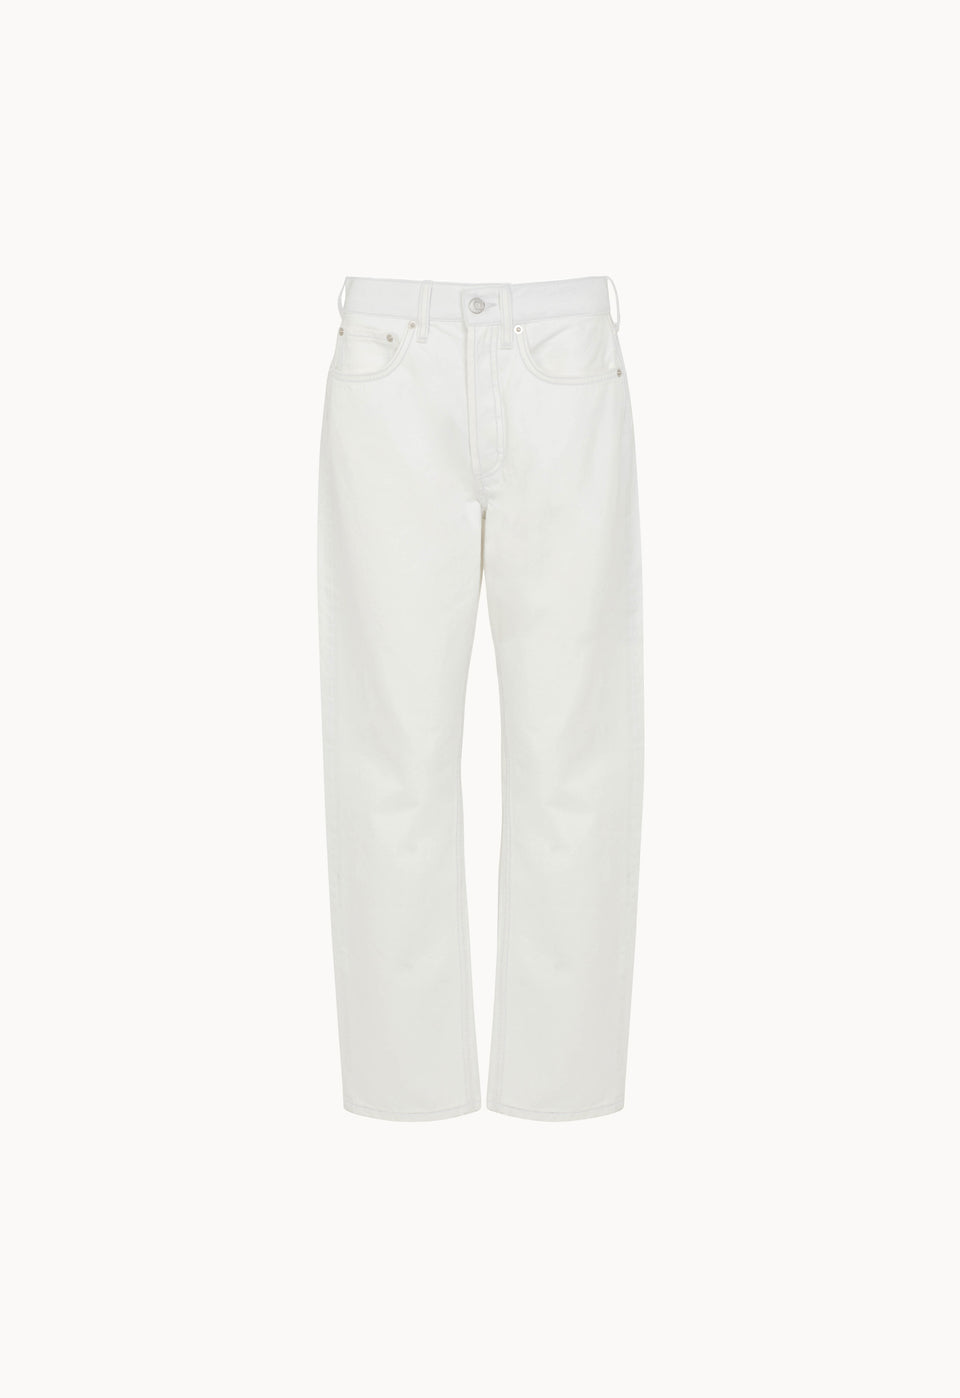 Denim High-Rise Straight Leg Jeans in White Denim